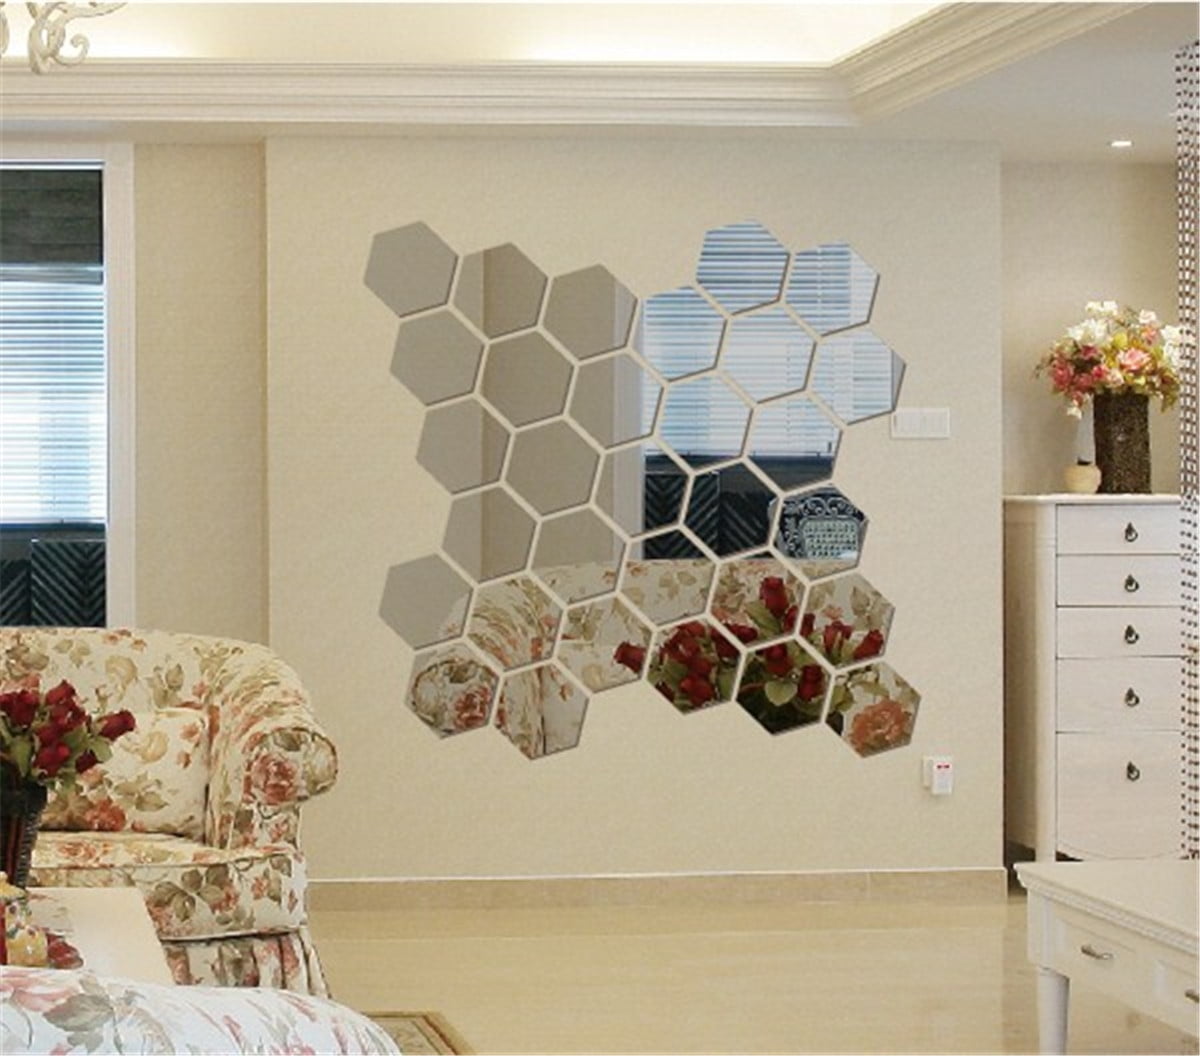 12 PCS Hexagonal 3D Modern Acrylic Mirror Wall Sticker Decal Art Mural ...